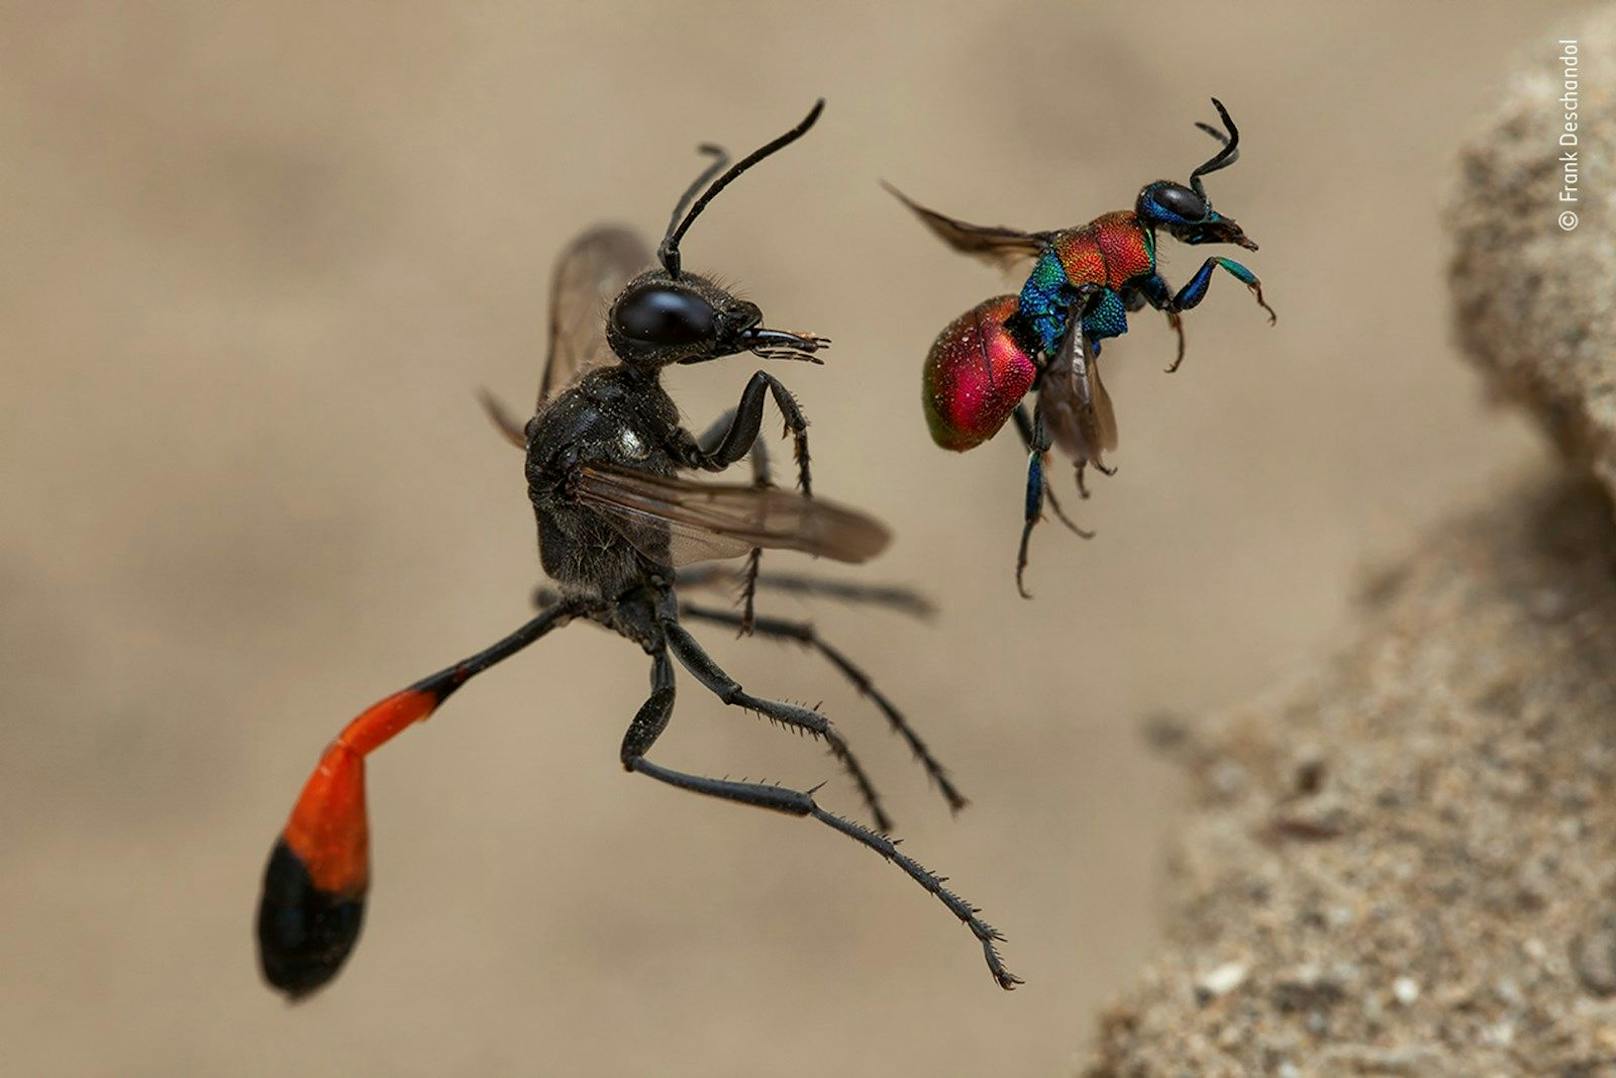 <strong>"Die Geschichte zweier Wespen":</strong>&nbsp;Zwei unterschiedliche Wespenarten fliegen ihr Nestloch an - fotografiert von Frank Deschandol. Die kleinere Kuckuckswespe ist ein Pararsit im Nest der alleine lebenden großen Sandwespe.